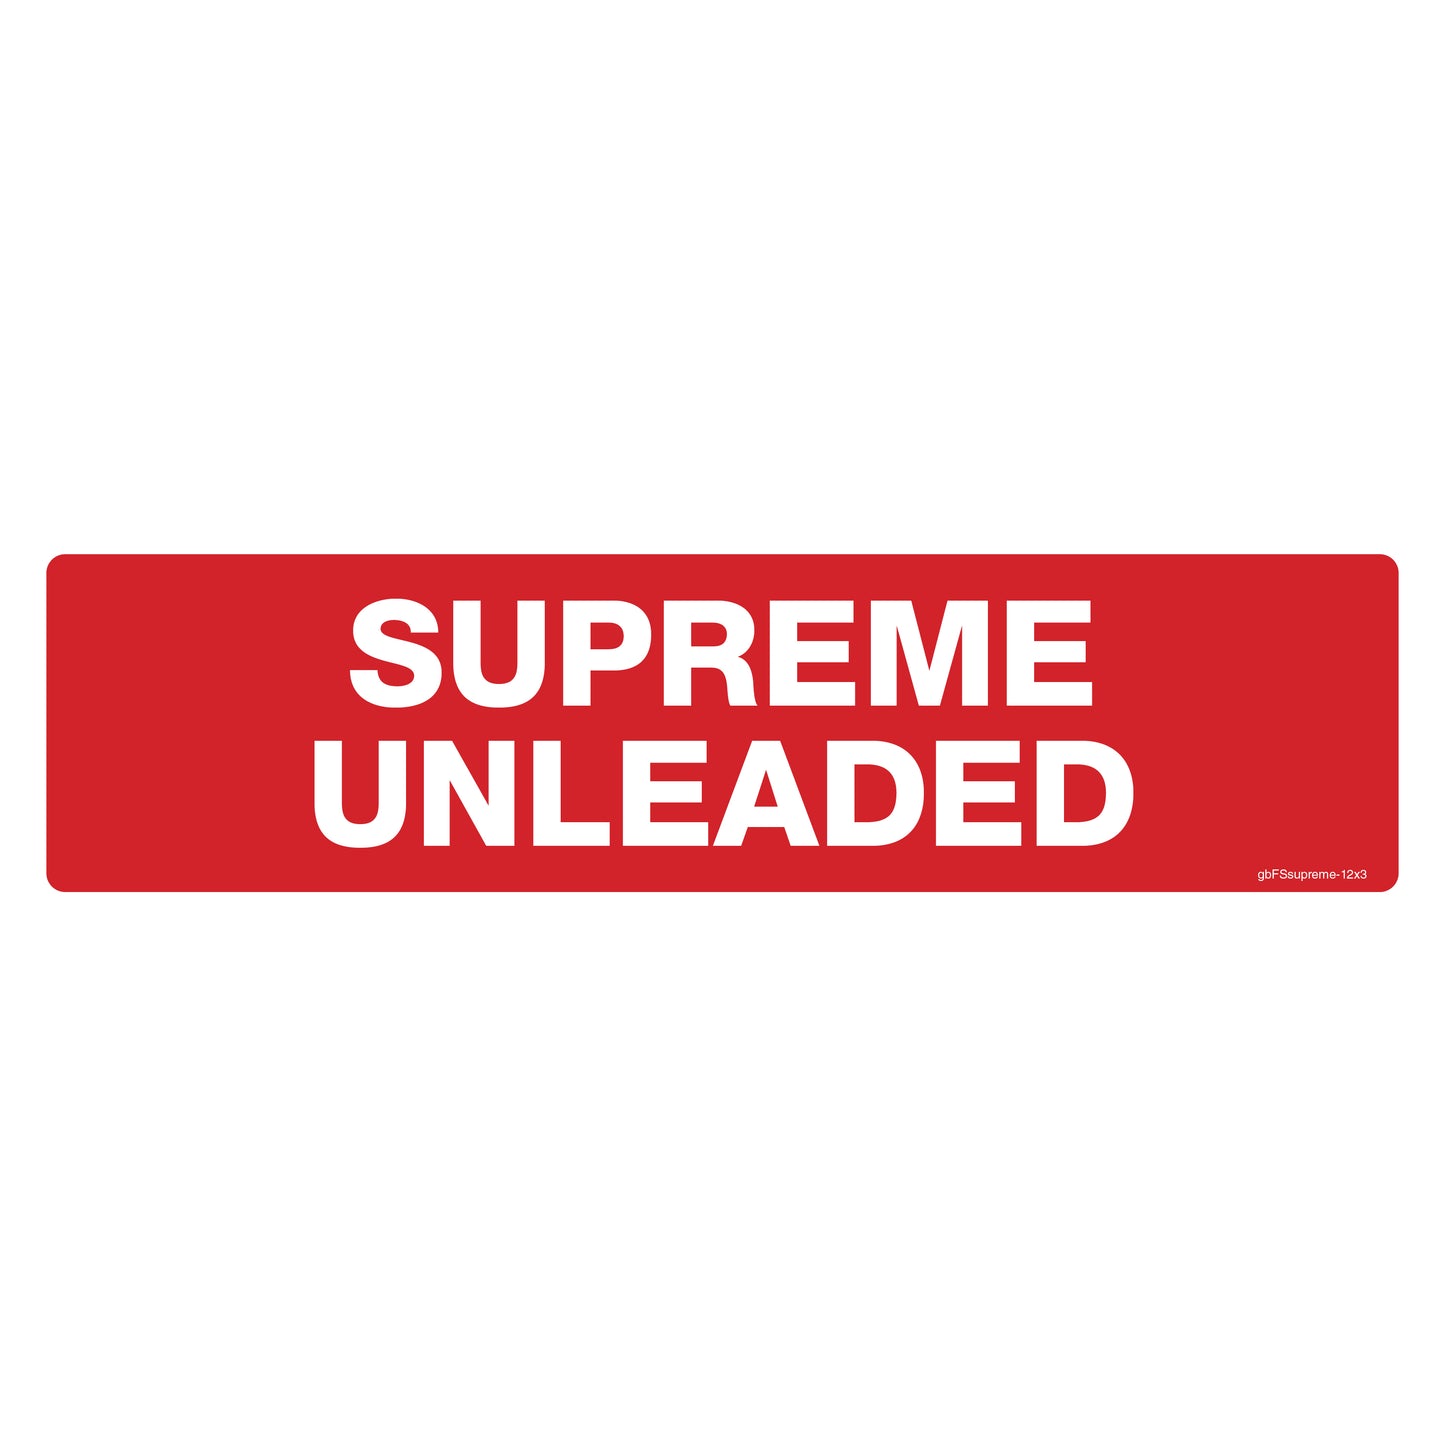 Supreme Unleaded gas sticker